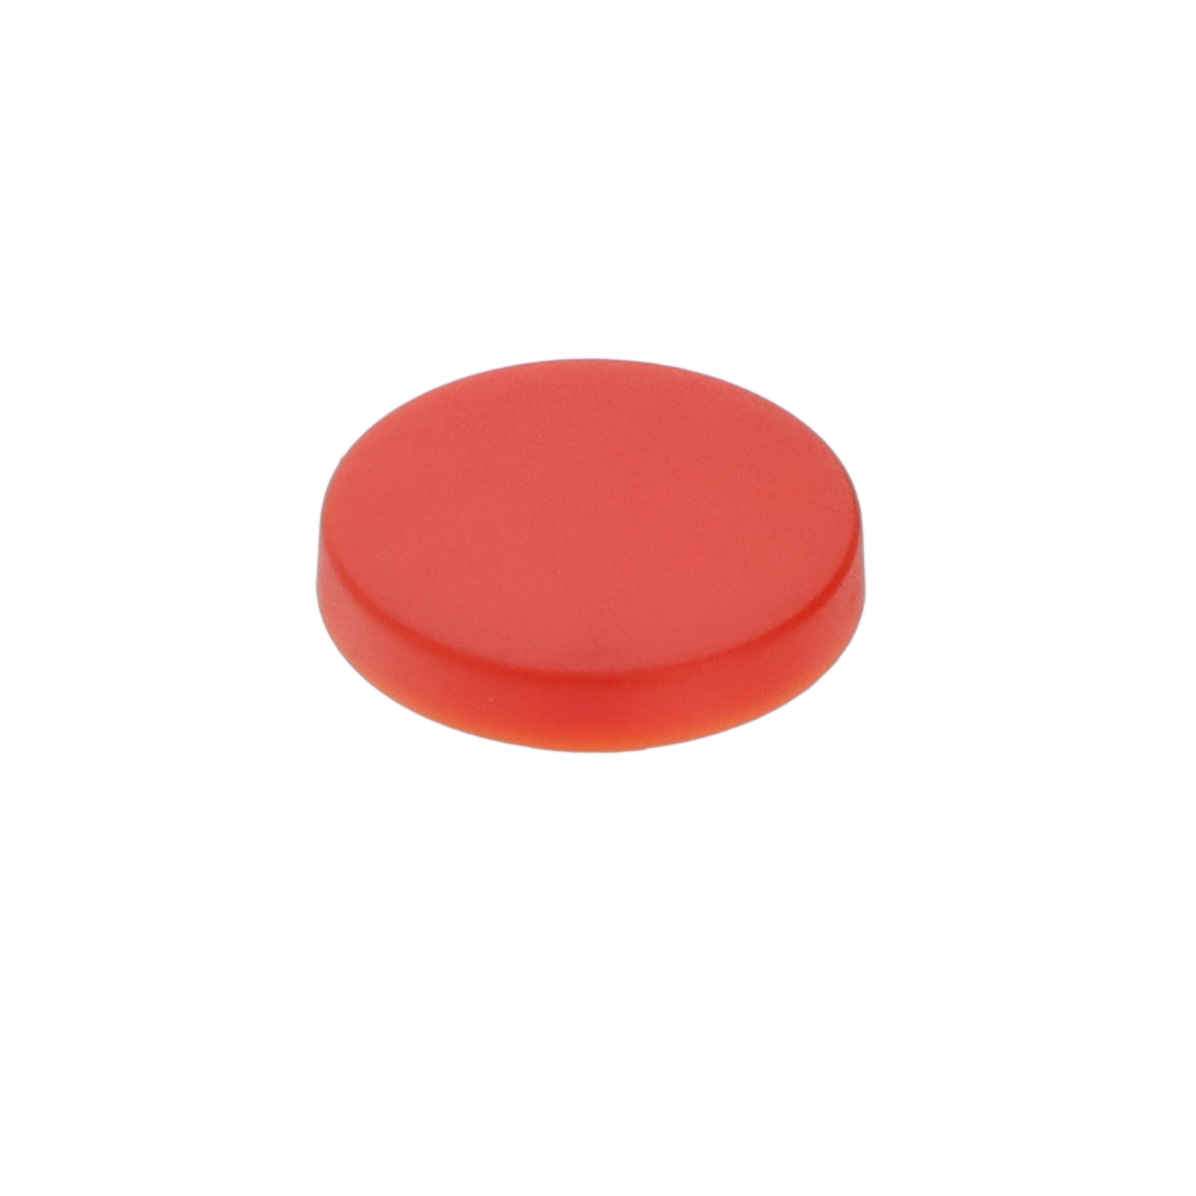 【IGA06】SOLID RED CAP IG